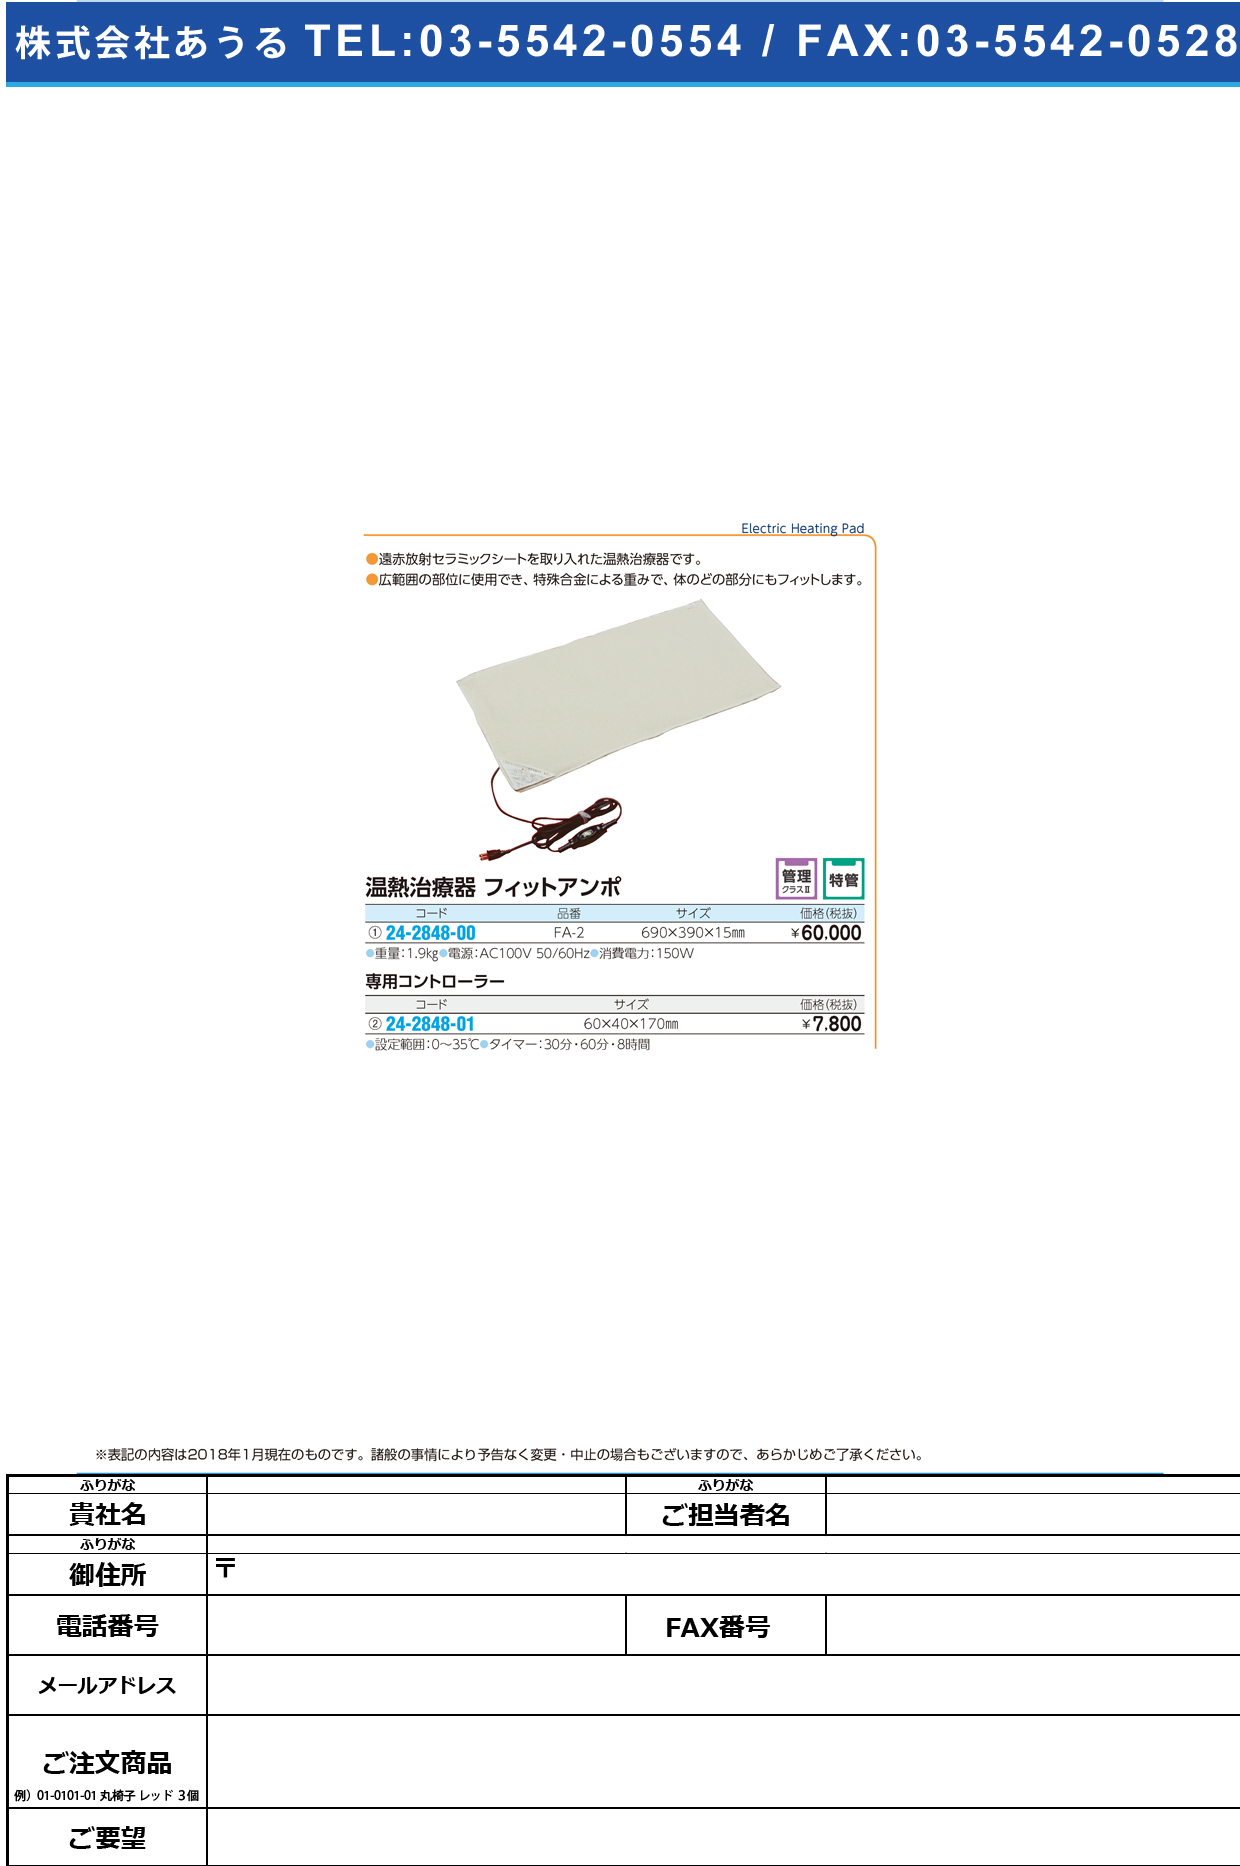 (24-2848-01)フィットアンポ用コントローラー  ﾌｨｯﾄｱﾝﾎﾟﾖｳｺﾝﾄﾛｰﾗｰ【1台単位】【2019年カタログ商品】